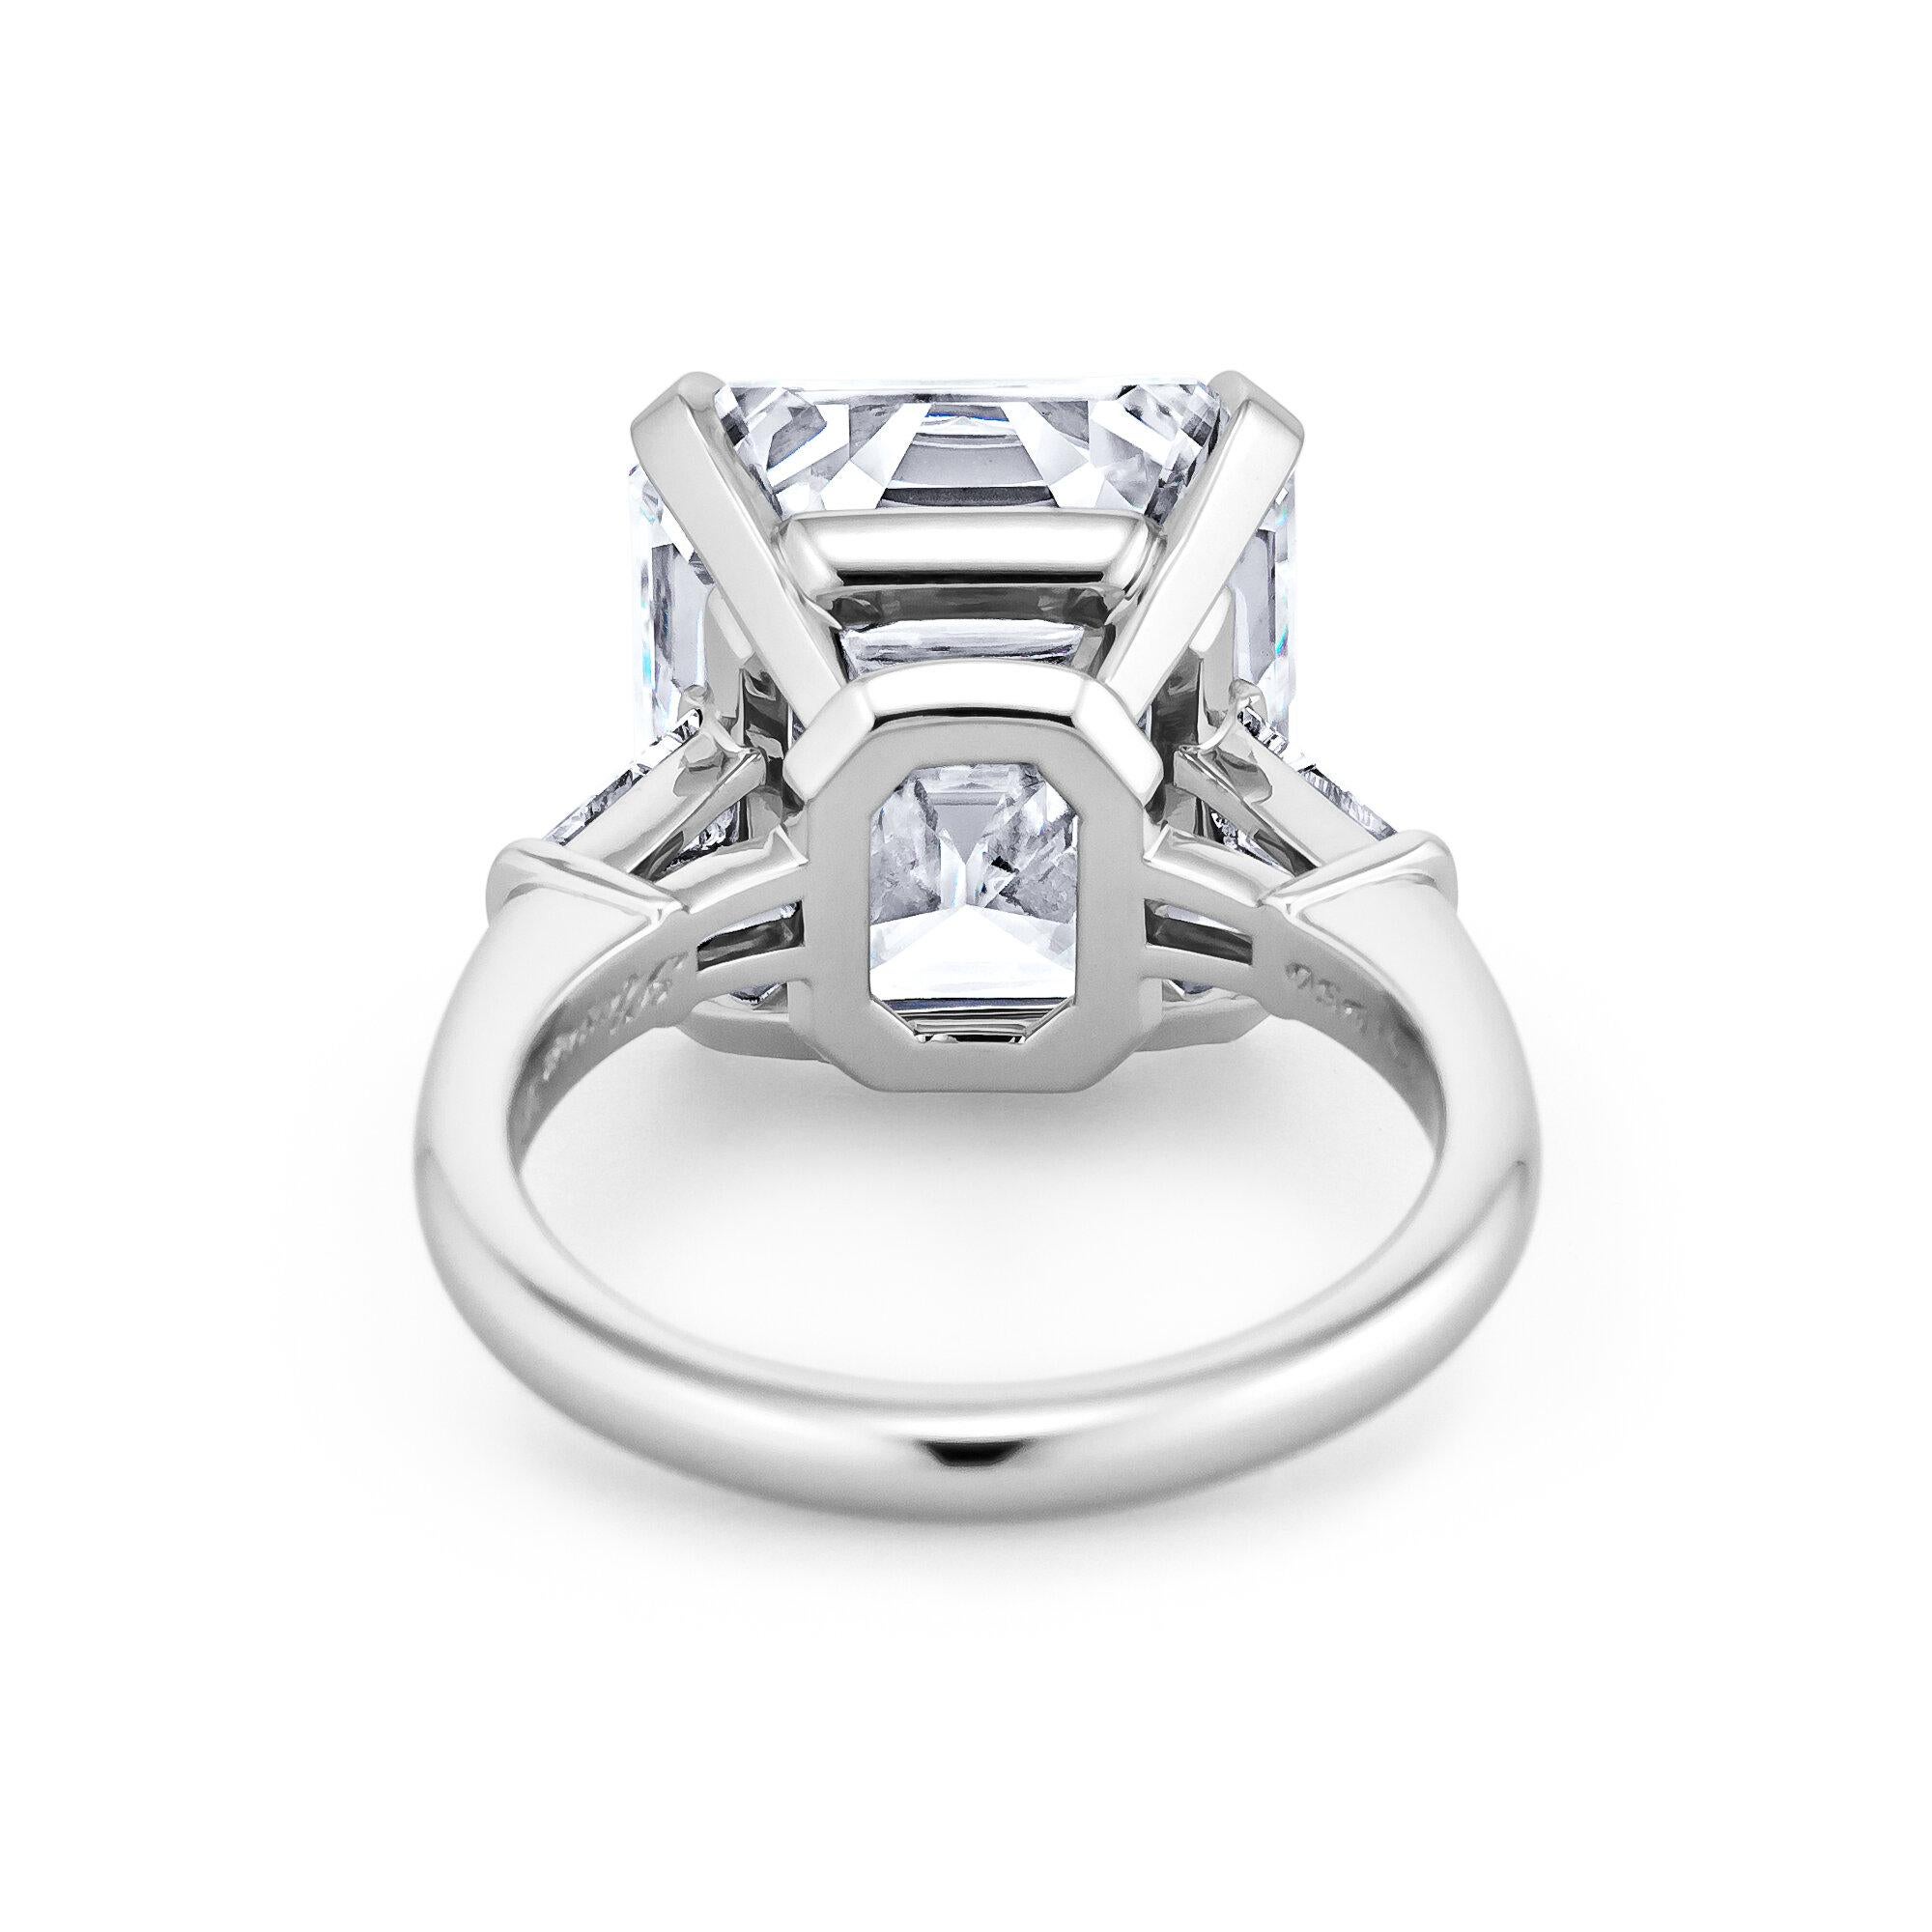 11 carat engagement ring